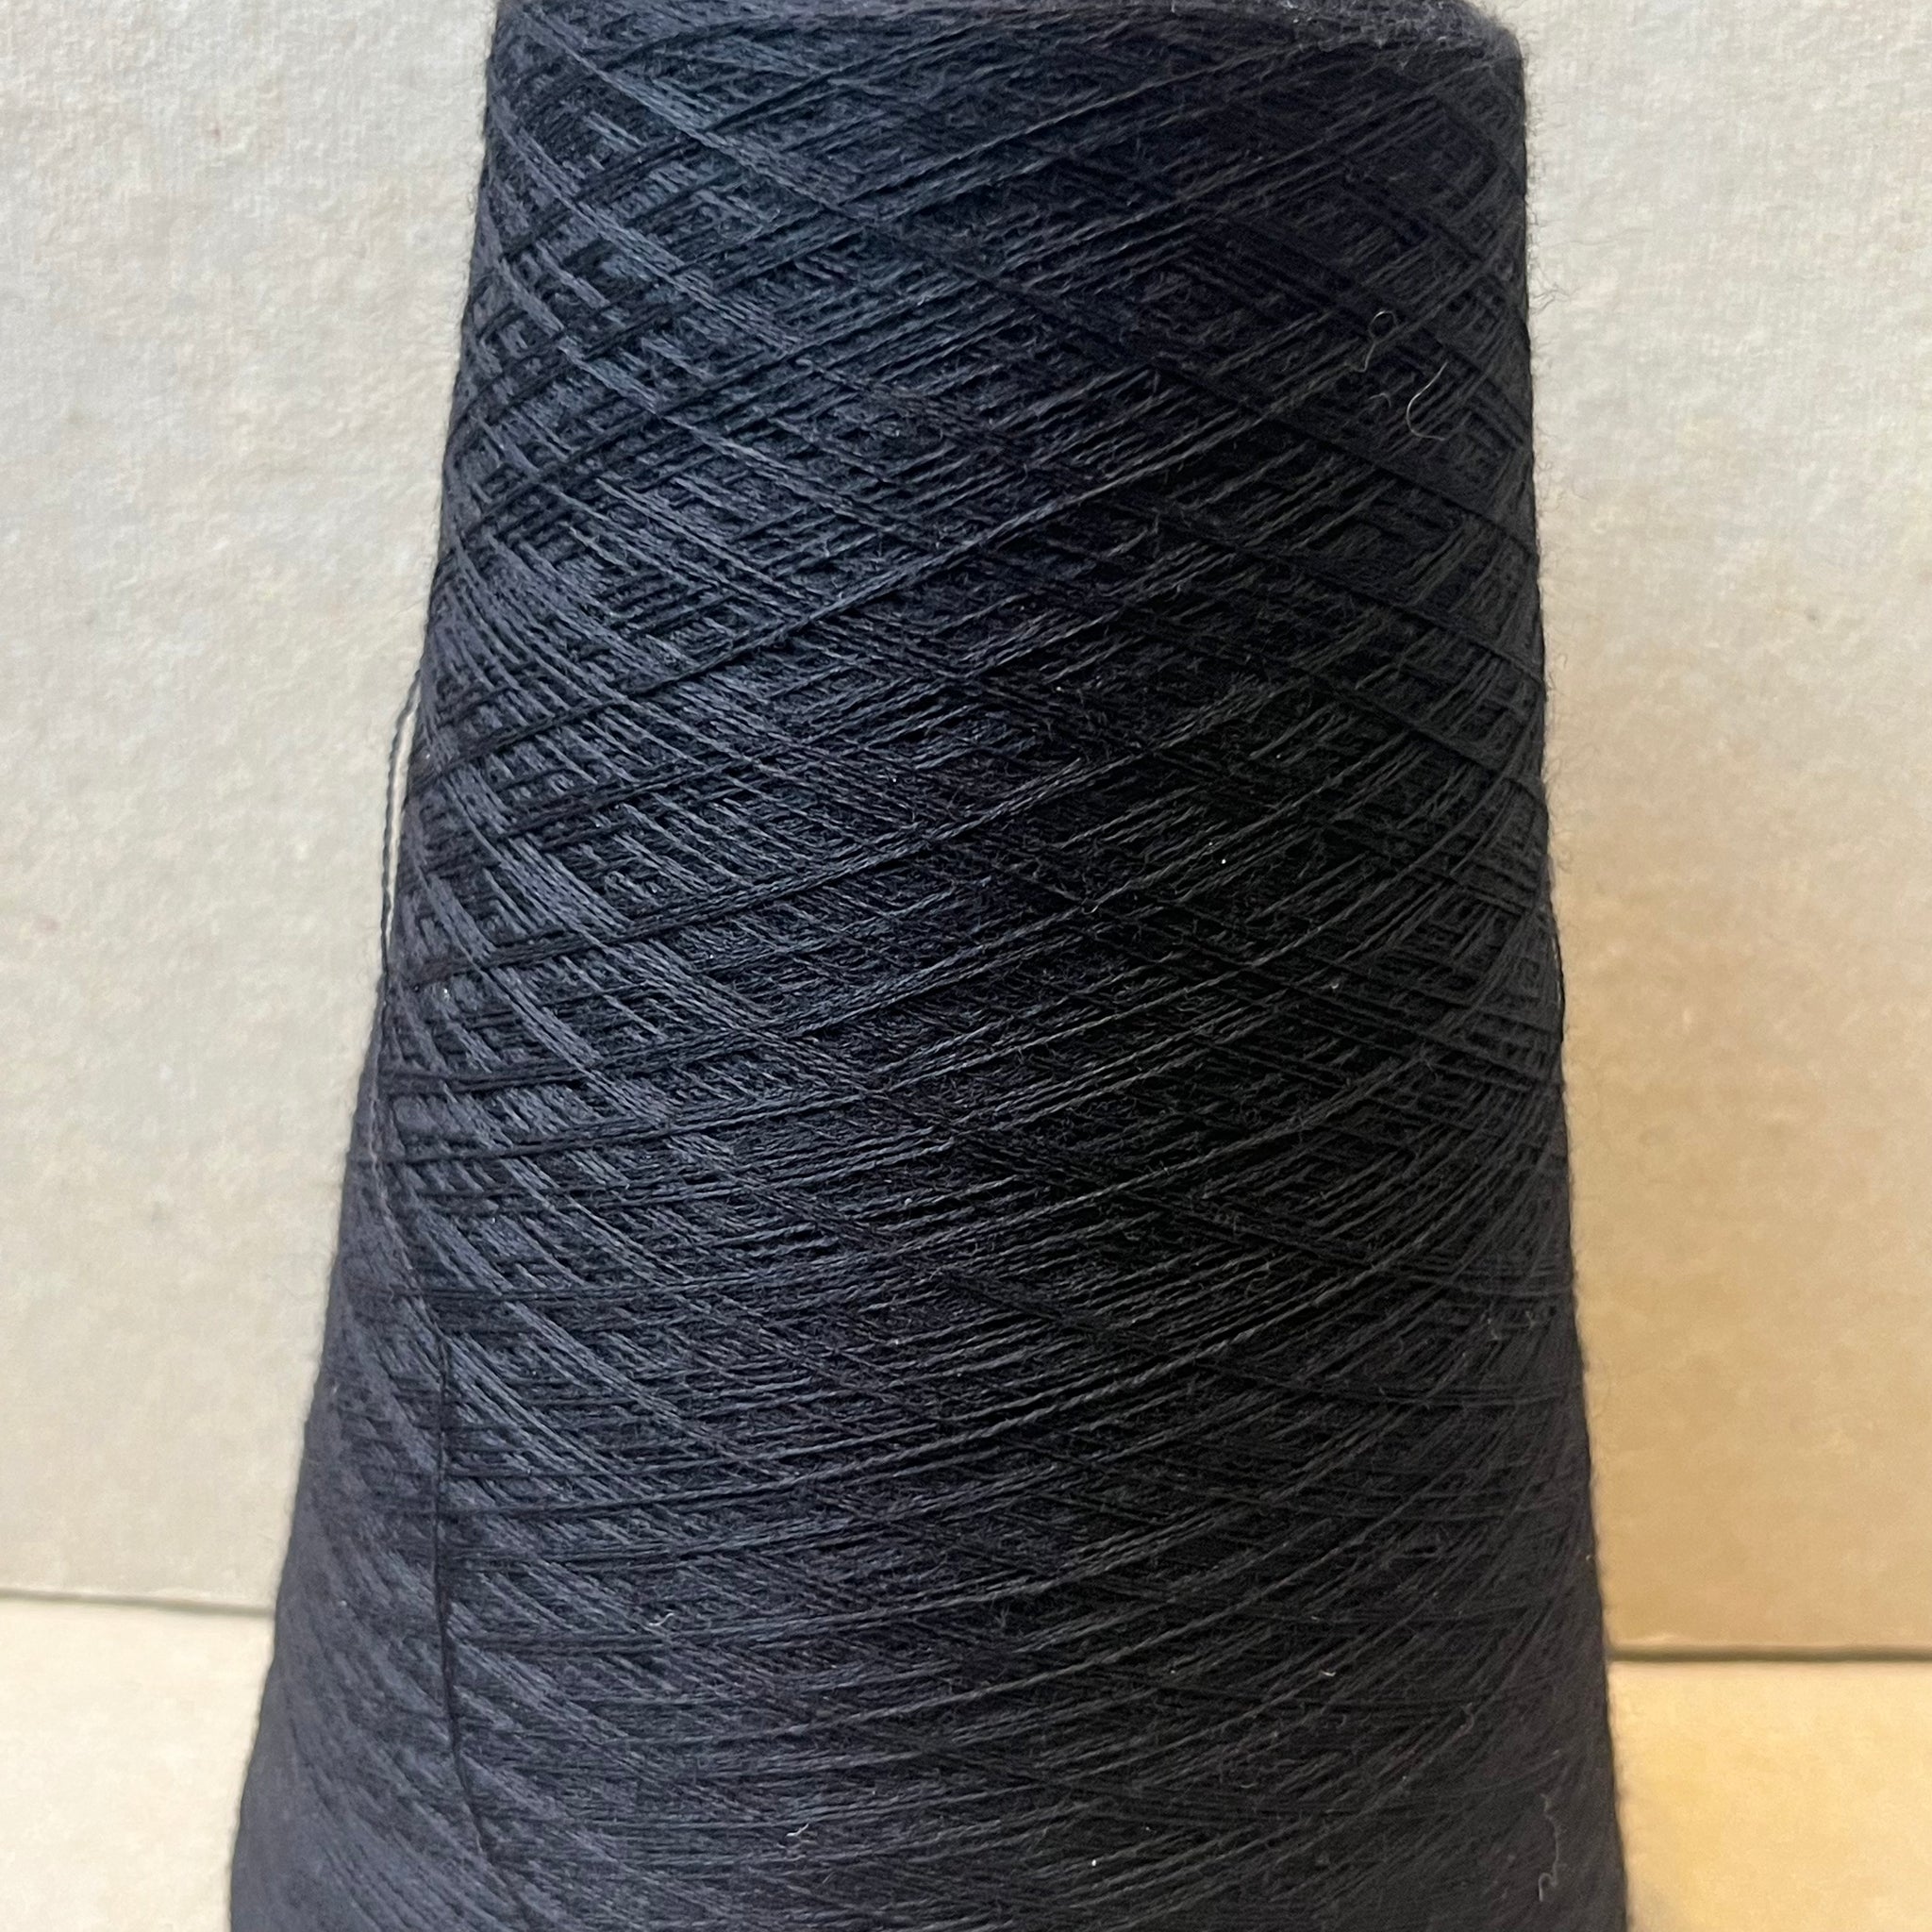 Merino Wool - Classic Black